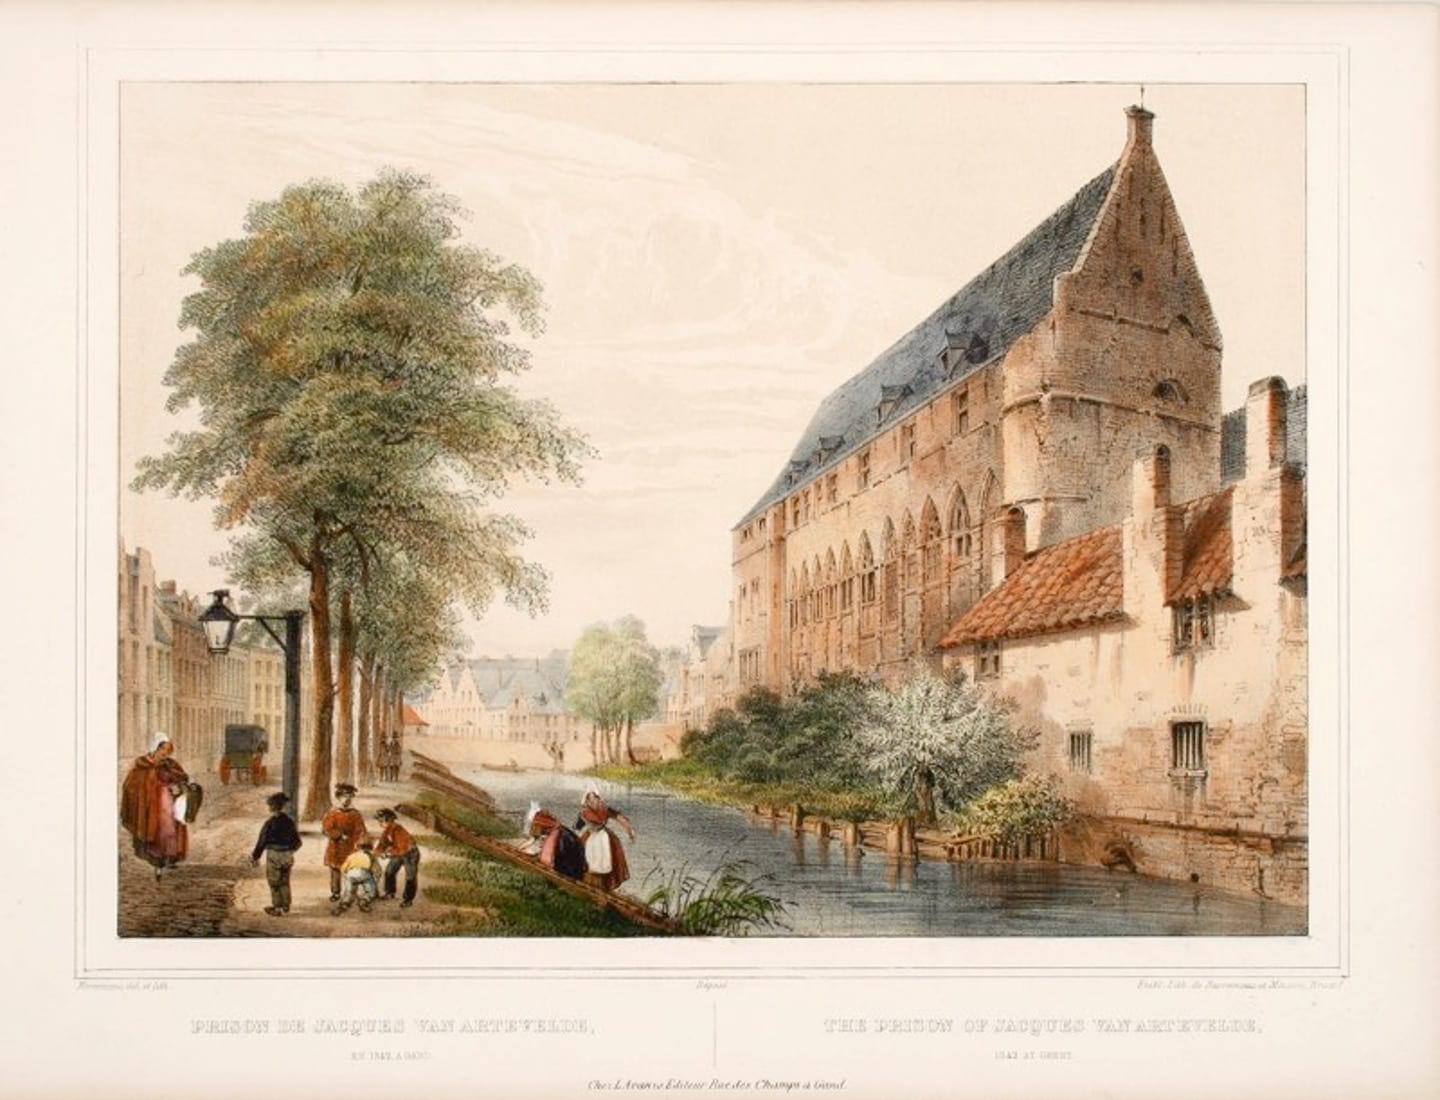 1325-1439 stad Gent gevangenis, staddepot, huurwoningen - 1342 gevangenisplaats Jacob Van Artevelde (17de eeuwse gravure)